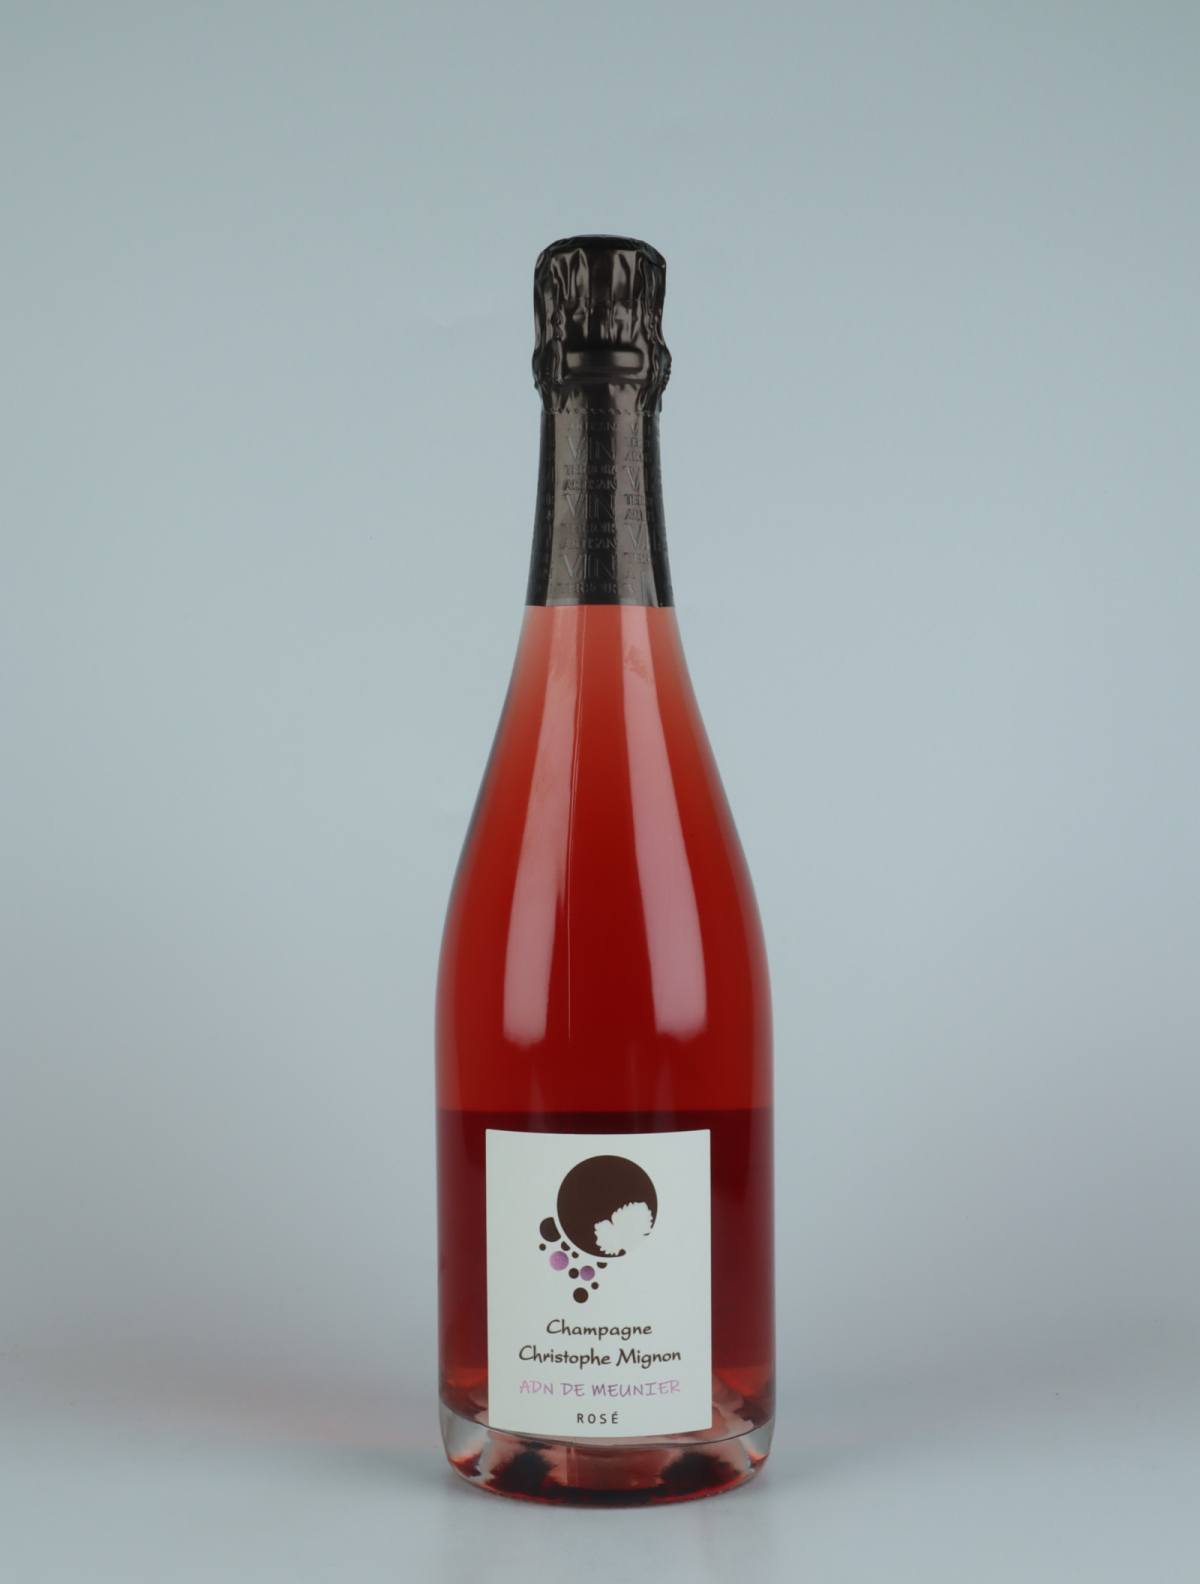 En flaske N.V. (2017/2018) ADN de Meunier Rose Extra Brut Mousserende fra Christophe Mignon, Champagne i Frankrig